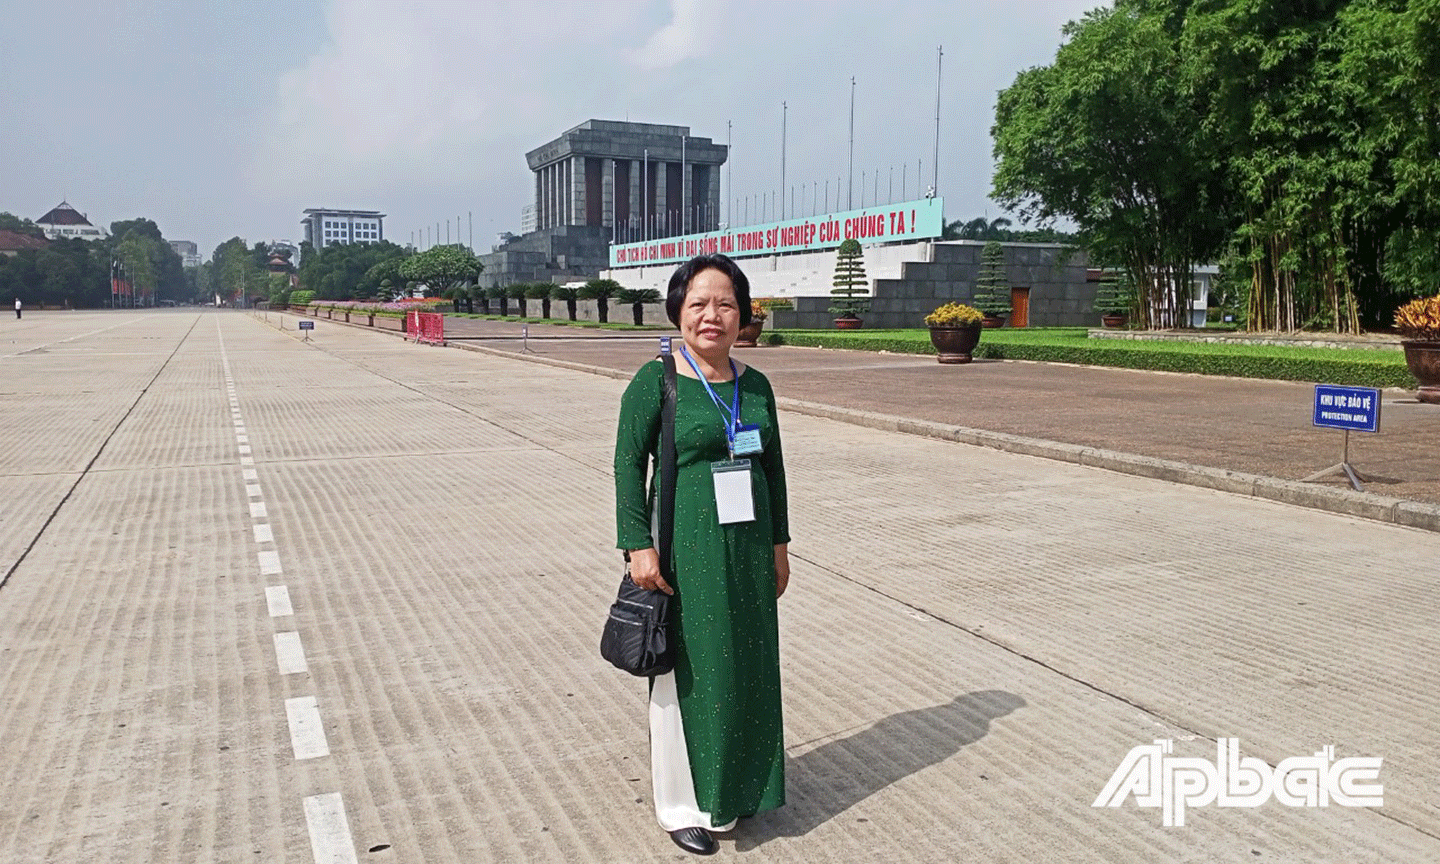 Chị Thủy là 1 trong 6 cá nhân tiêu biểu dự Hội nghị gặp gỡ người có công và thân nhân liệt sĩ  tiêu biểu tại Hà Nội dịp kỷ niệm 75 năm Ngày Thương binh - Liệt sĩ 27-7 năm nay.